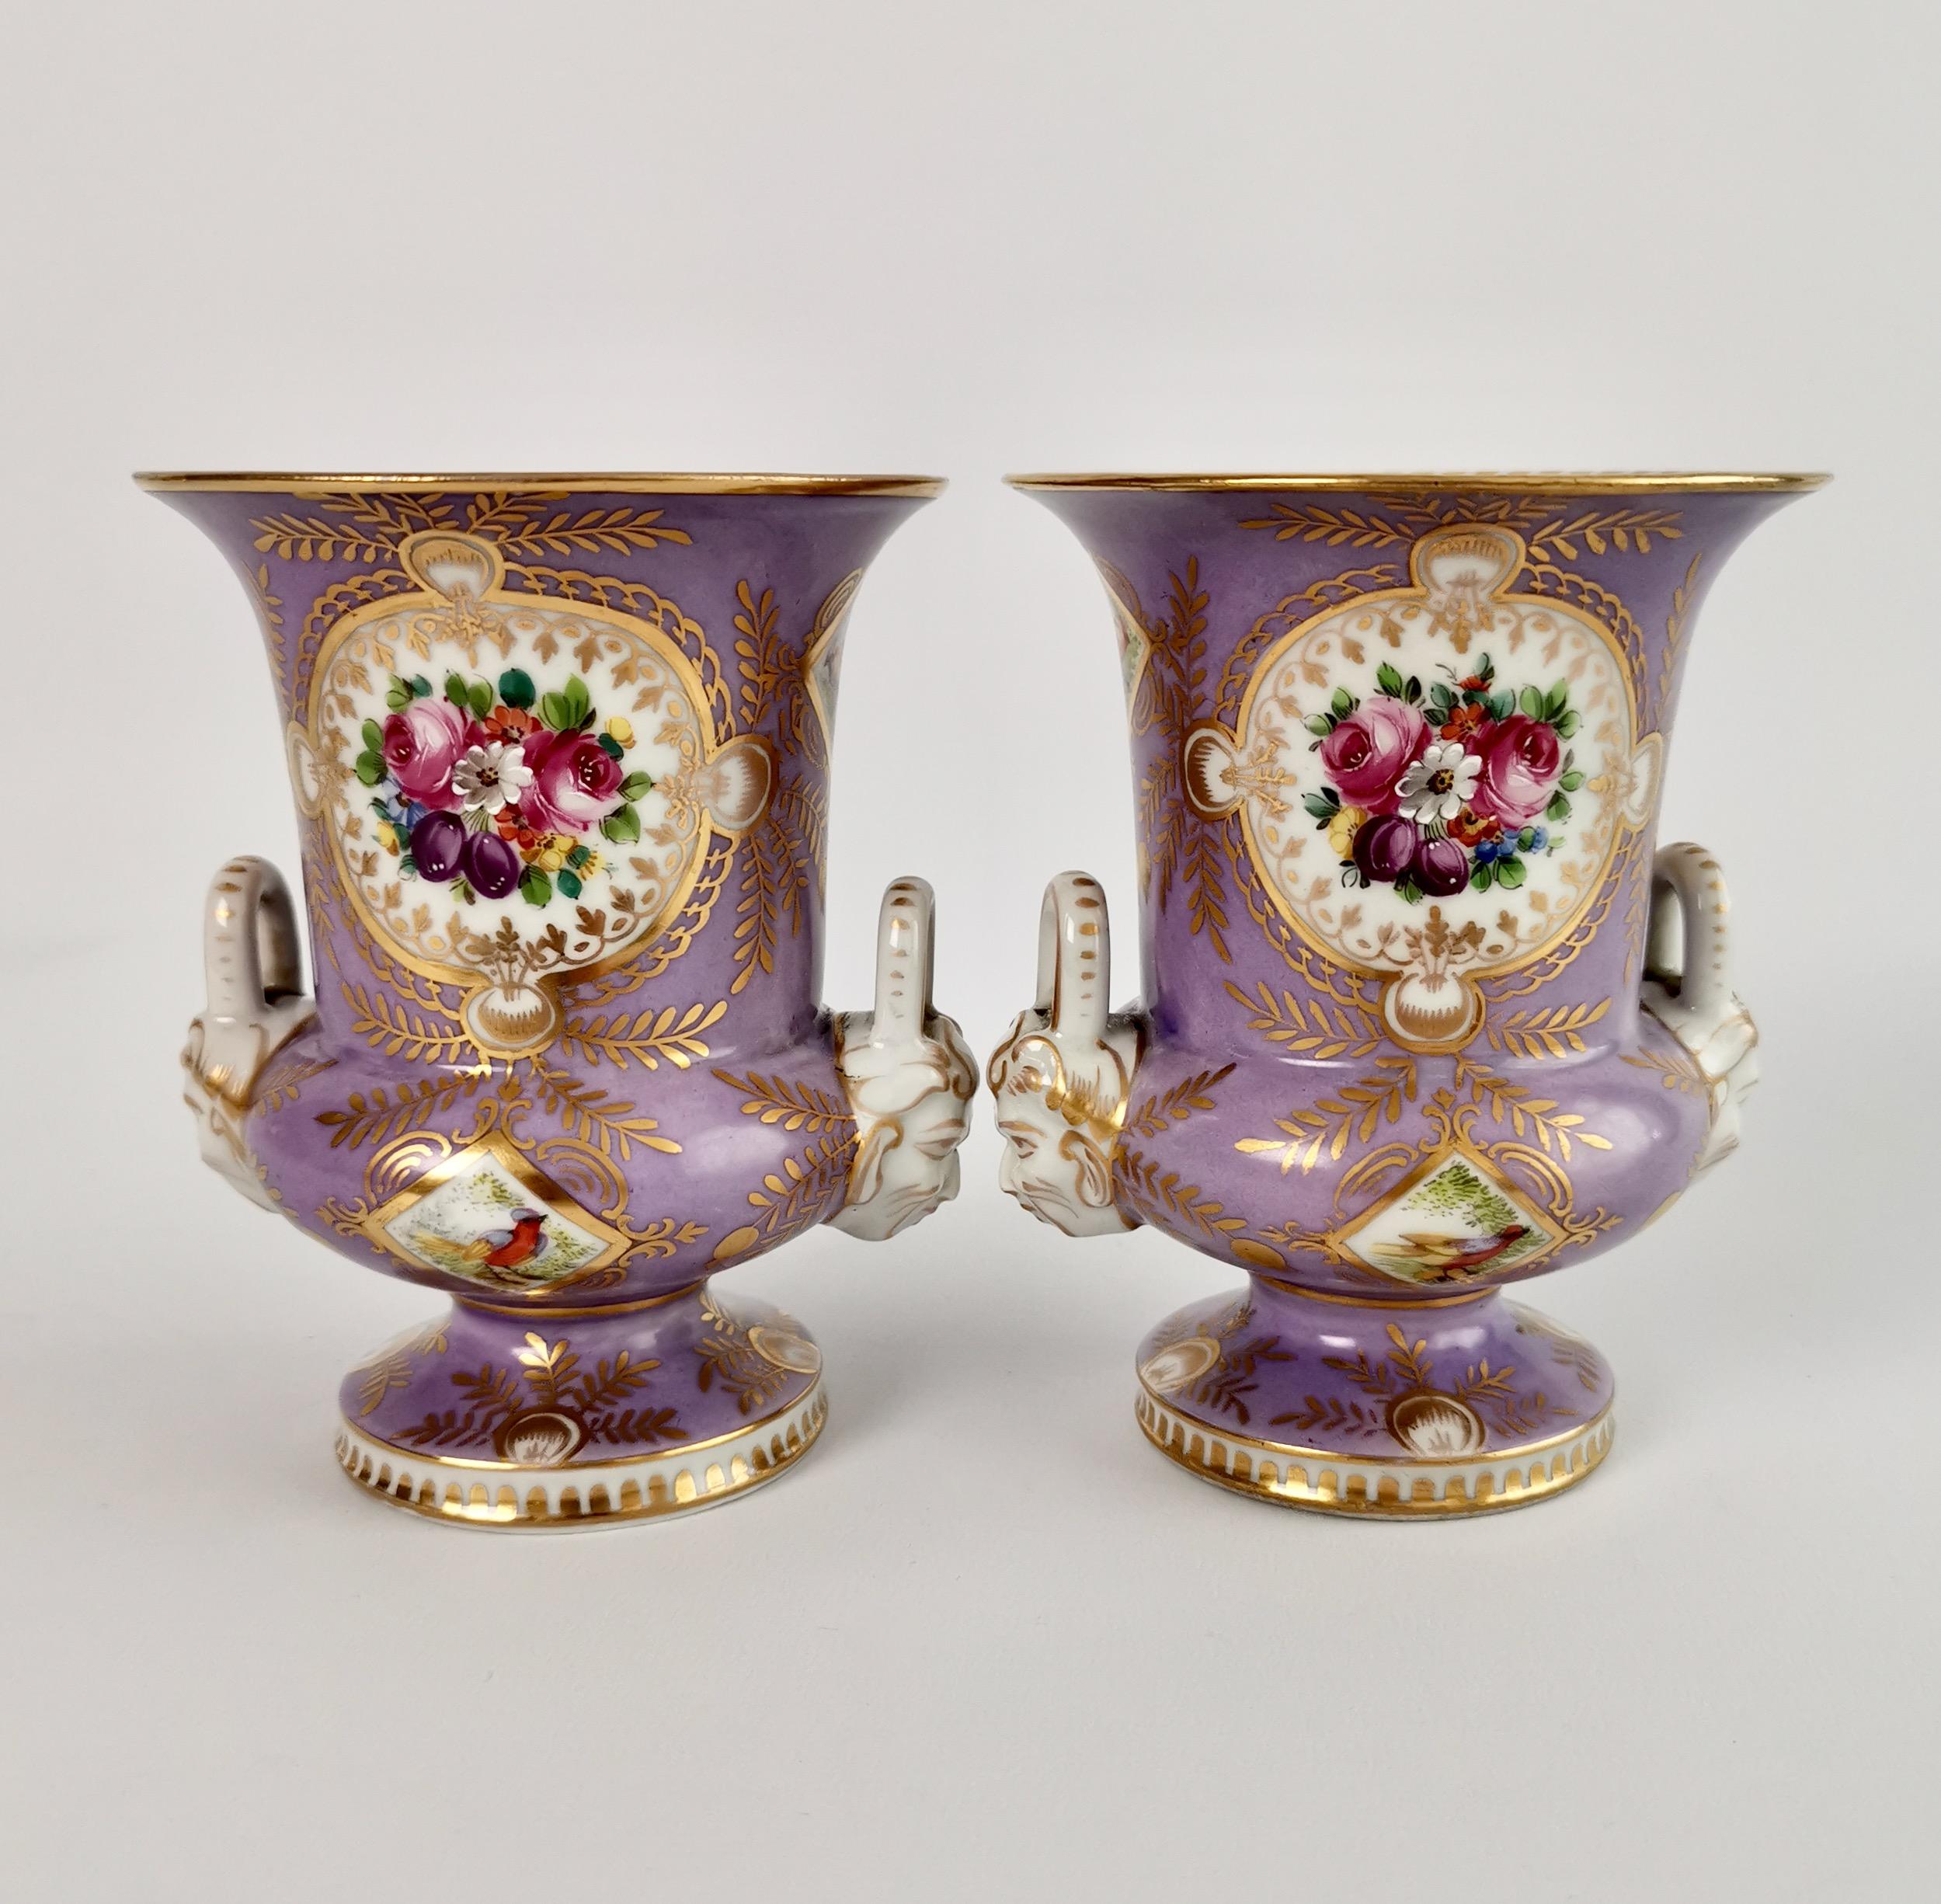 Campana-Vasen aus Porzellan, Edmé Samson zugeschrieben, Flieder, Vögel, Blumen, 19. Jahrhundert (Englisch)